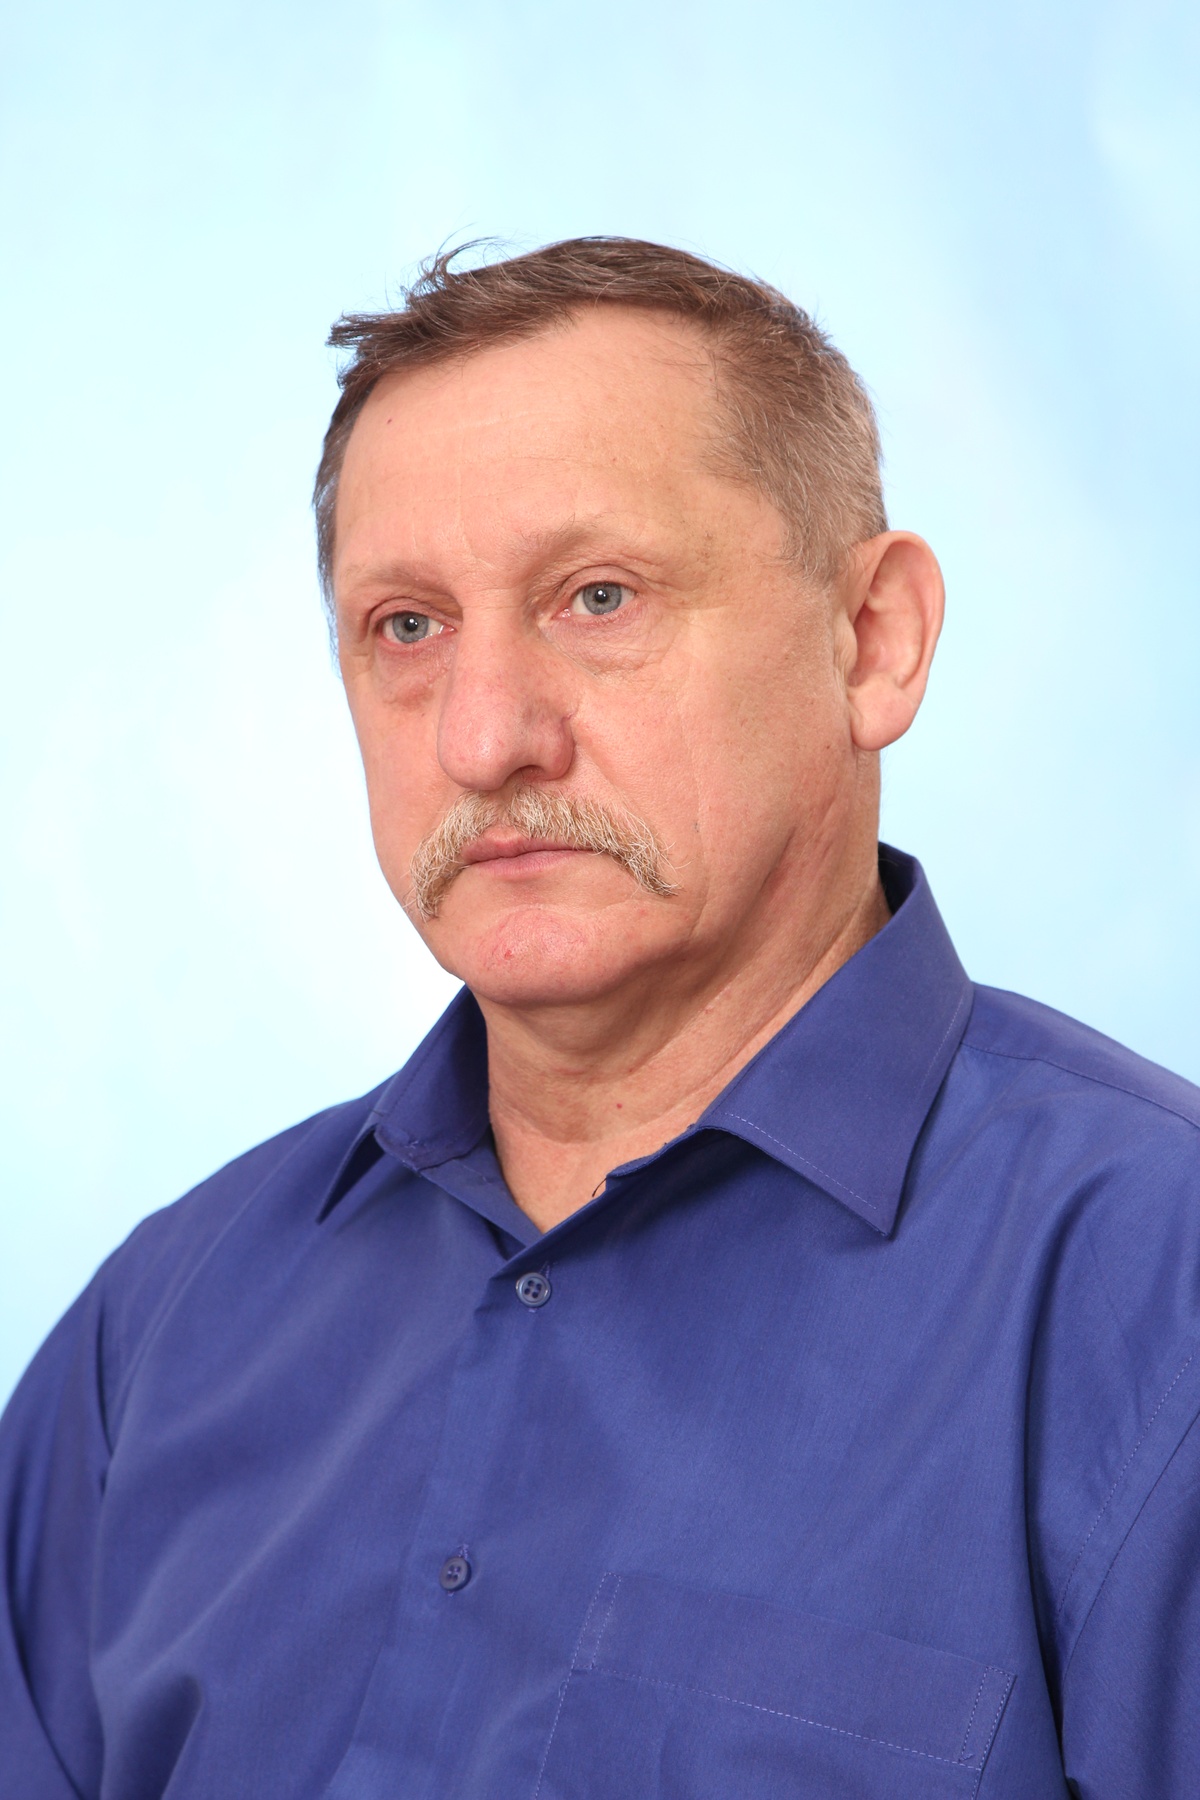 Овсянкин Сергій Анатолійович народився в 1959 році в місті Меленки